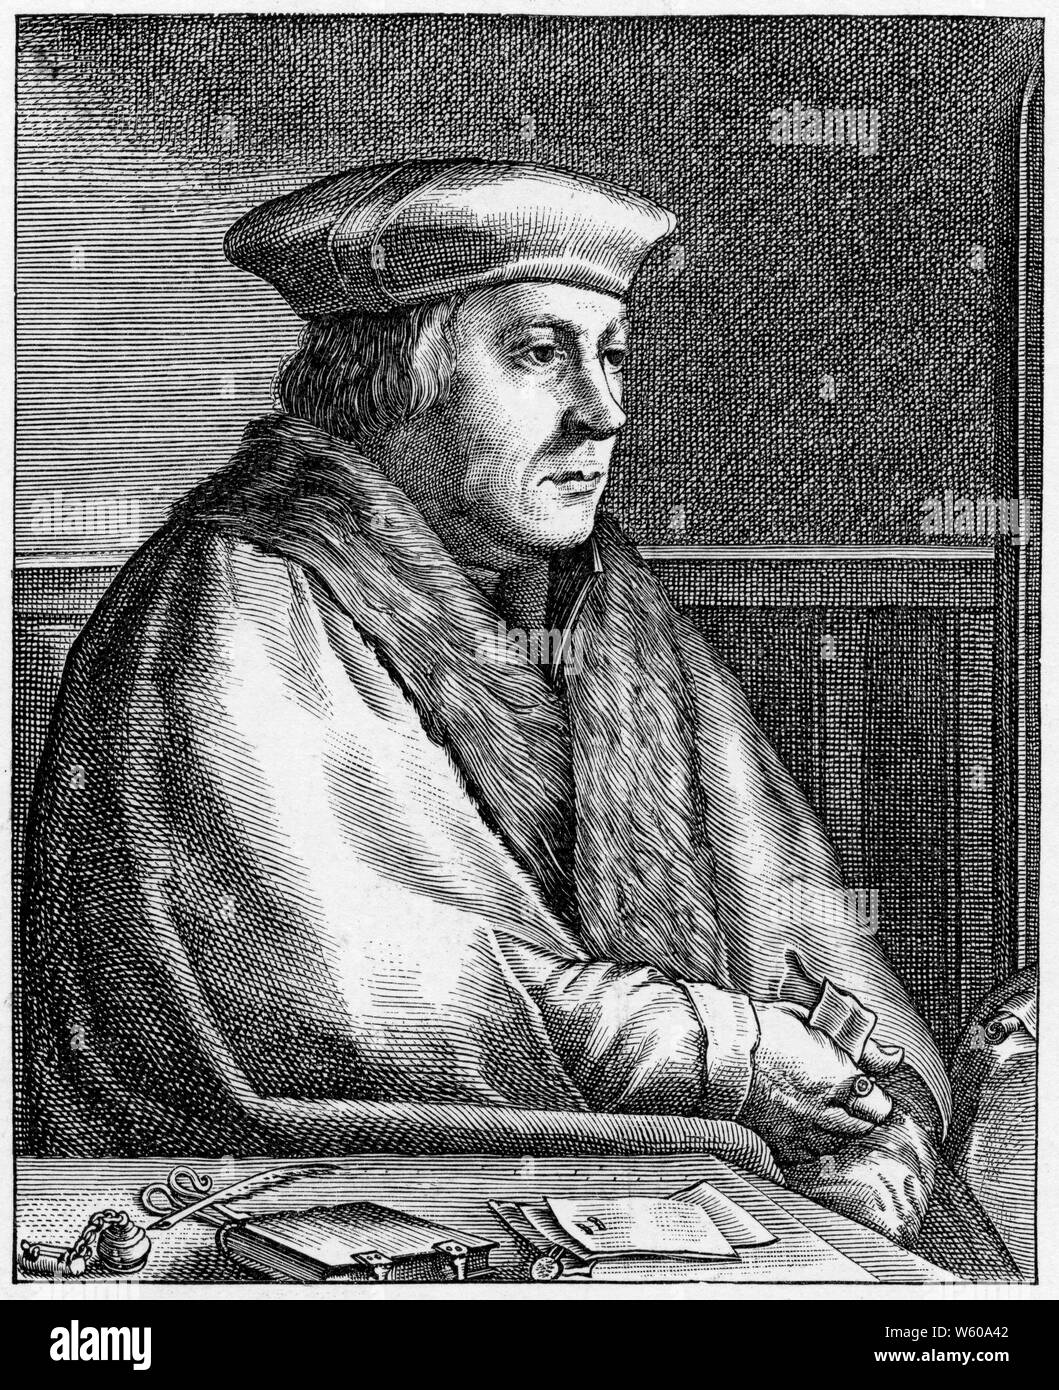 Thomas Cromwell, premier comte d'Essex (c1485-1540), 1620. Après Hans Holbein le Jeune (c1497-1543). Thomas Cromwell, avocat et homme d'État anglais qui a servi comme chef-ministre au roi Henry VIII d'Angleterre de 1532 à 1540. De Heroologia Anglica, 1620 de Henry Holland. Banque D'Images